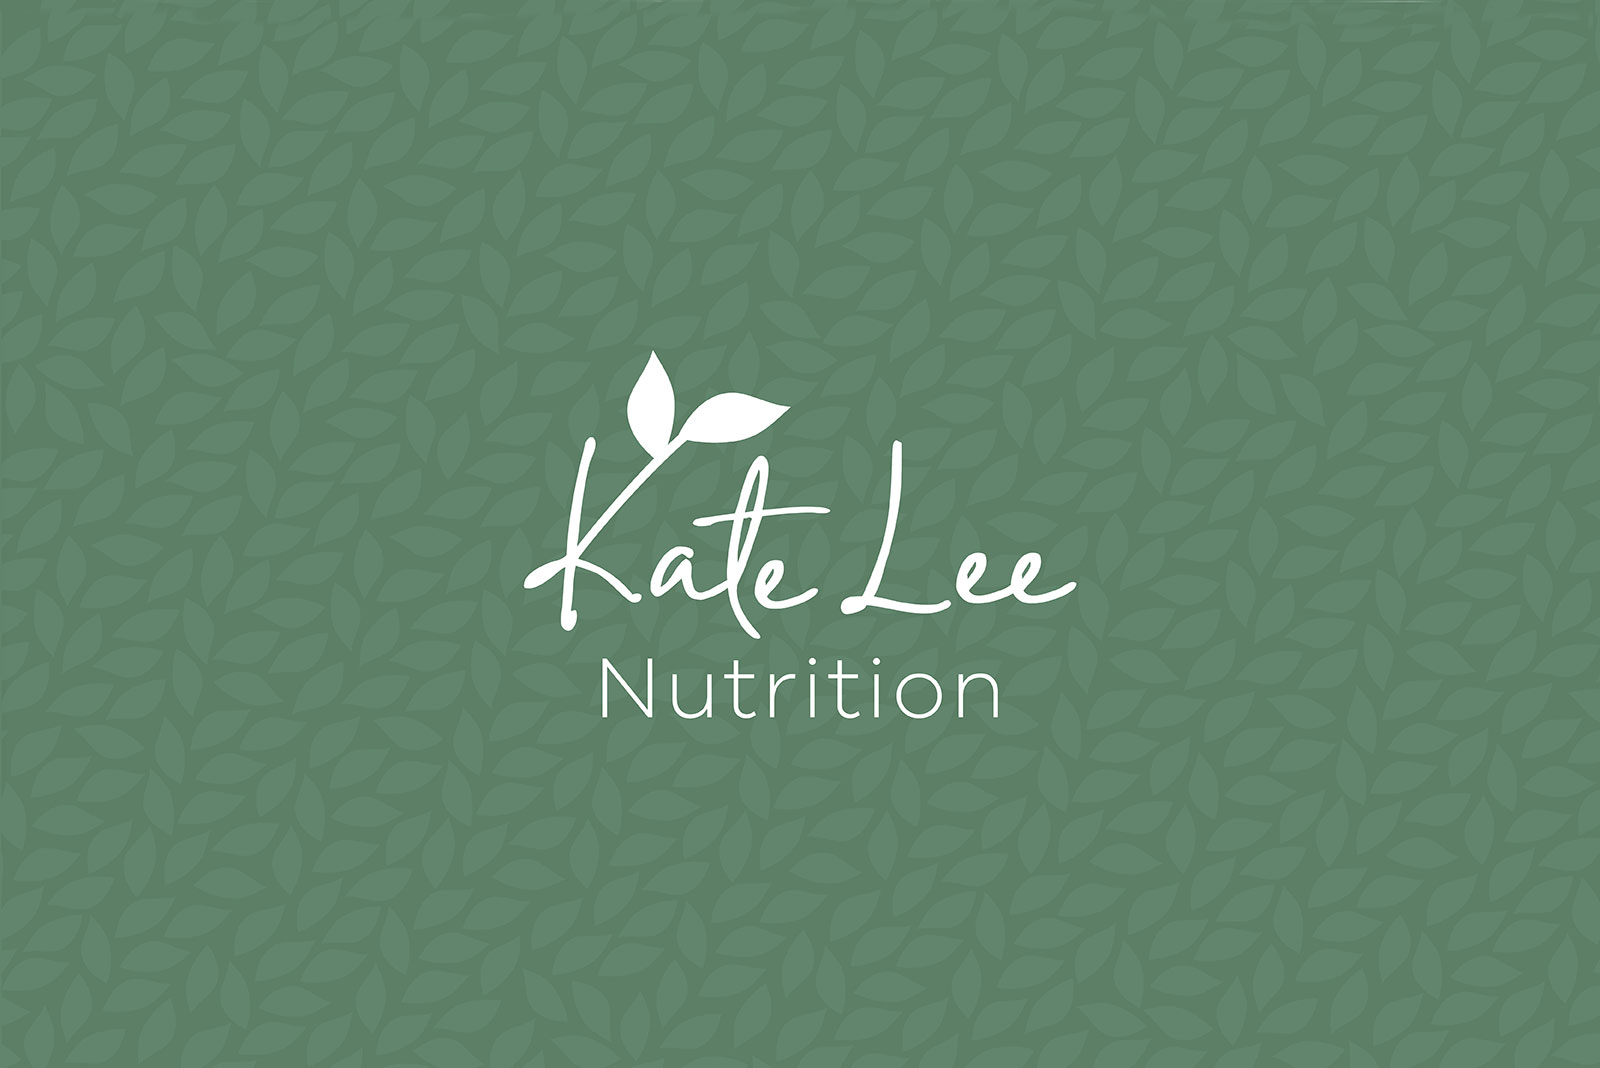 Kate Lee Nutrition branding